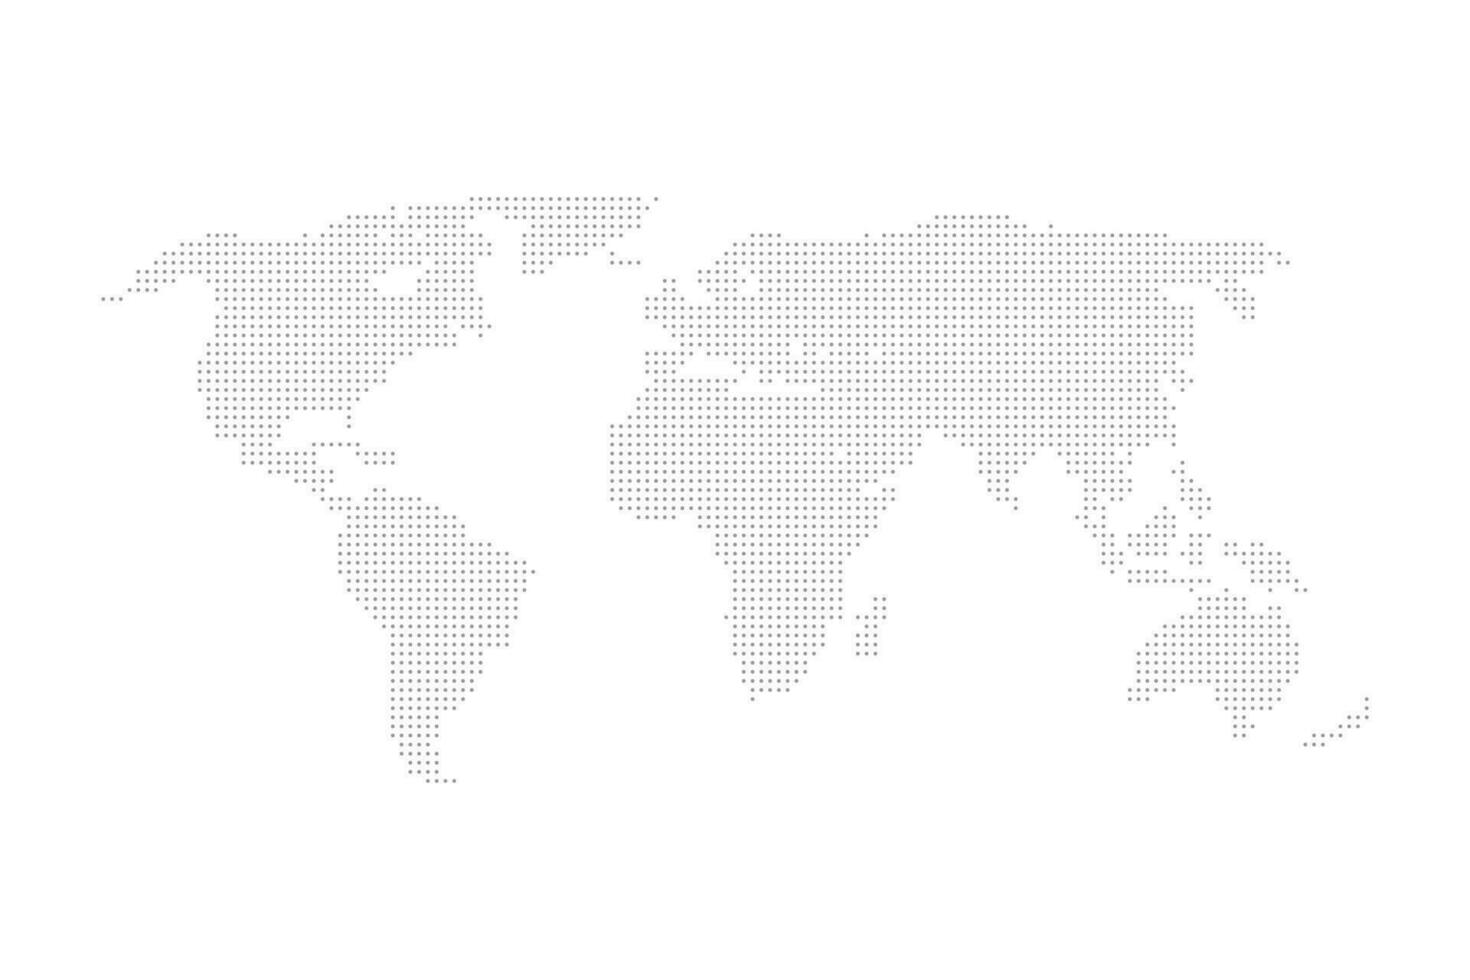 digital dotted world map vector background design illustration